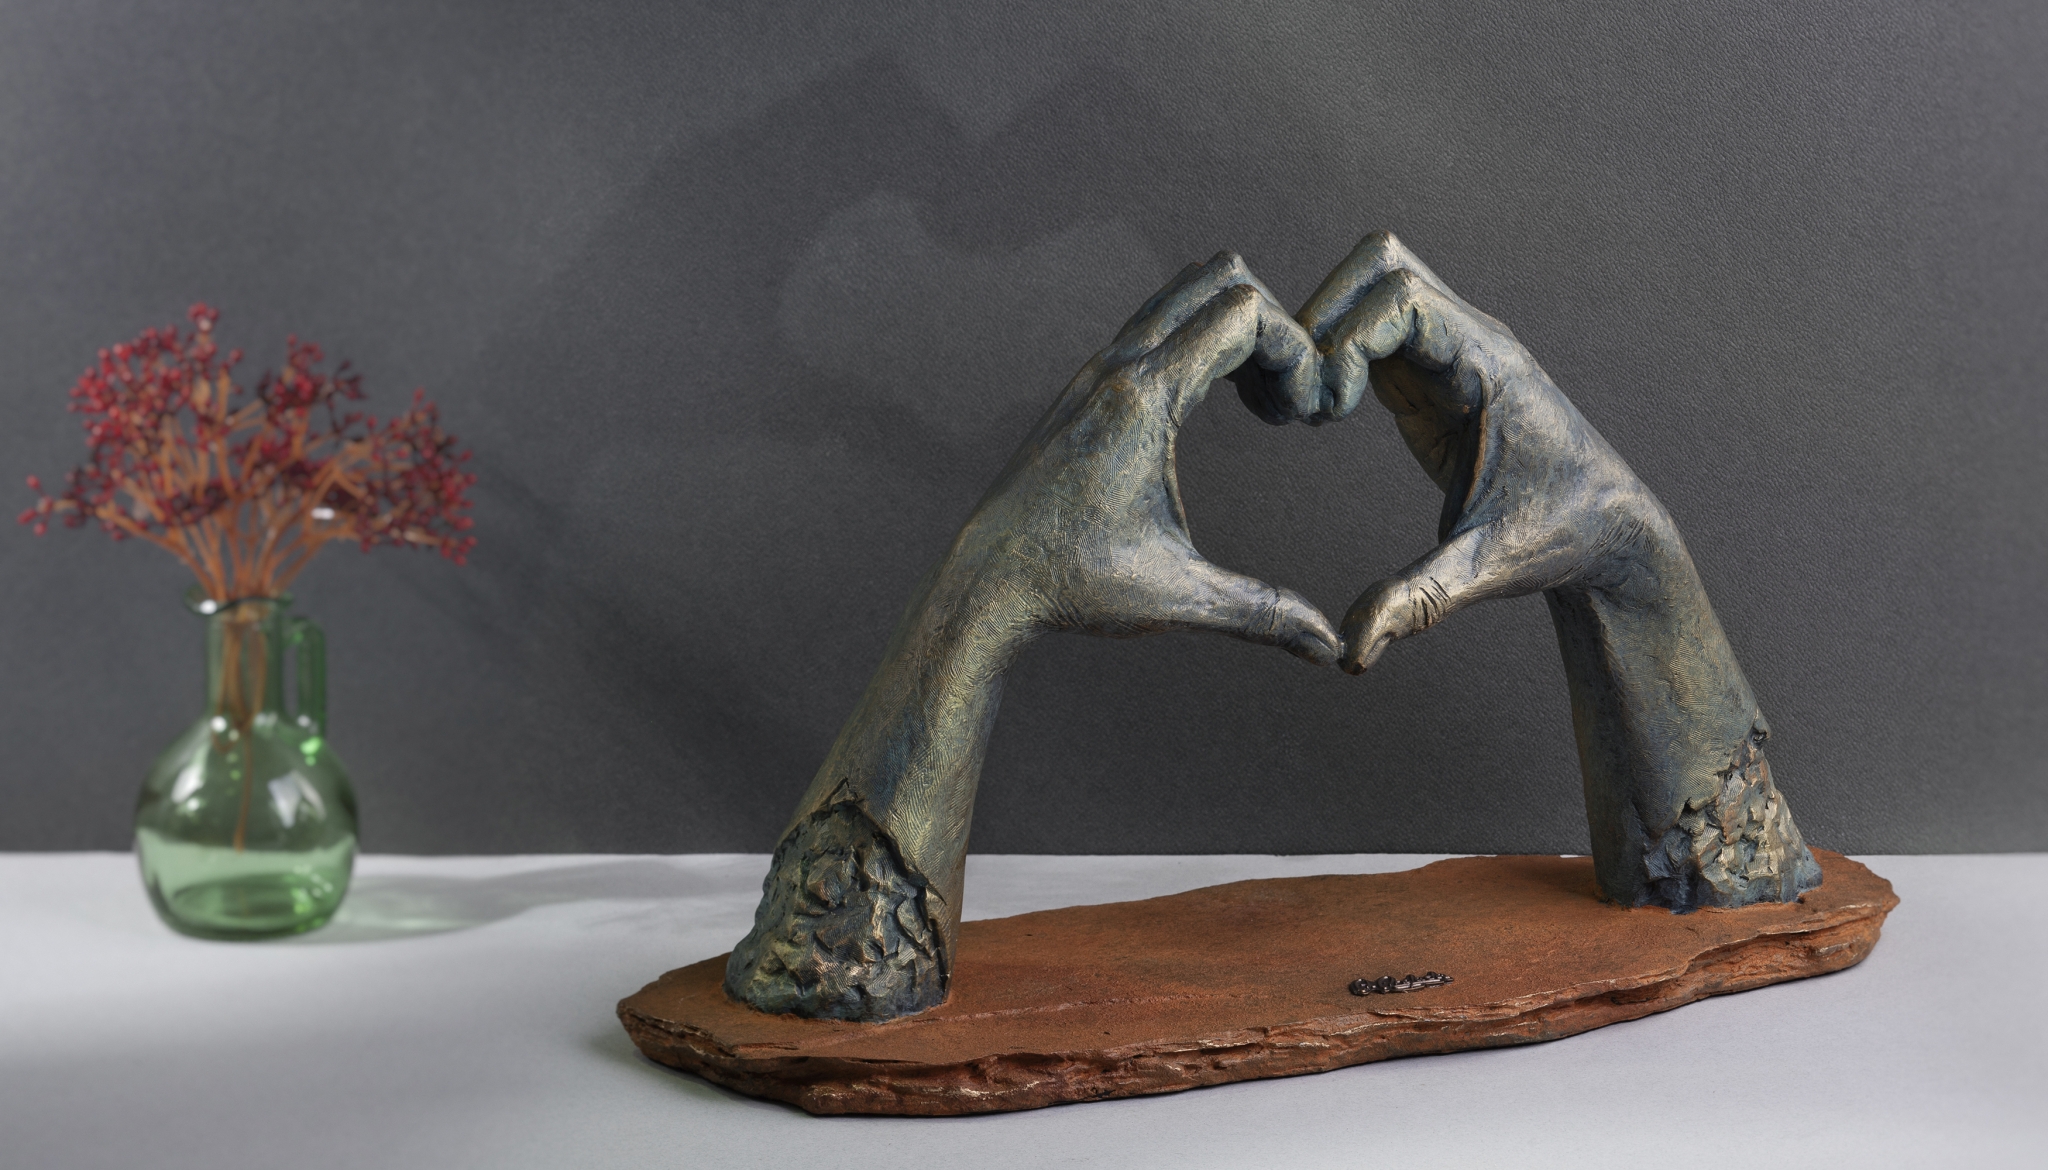 Скульптура "Люблю", коричневый, искусственный камень